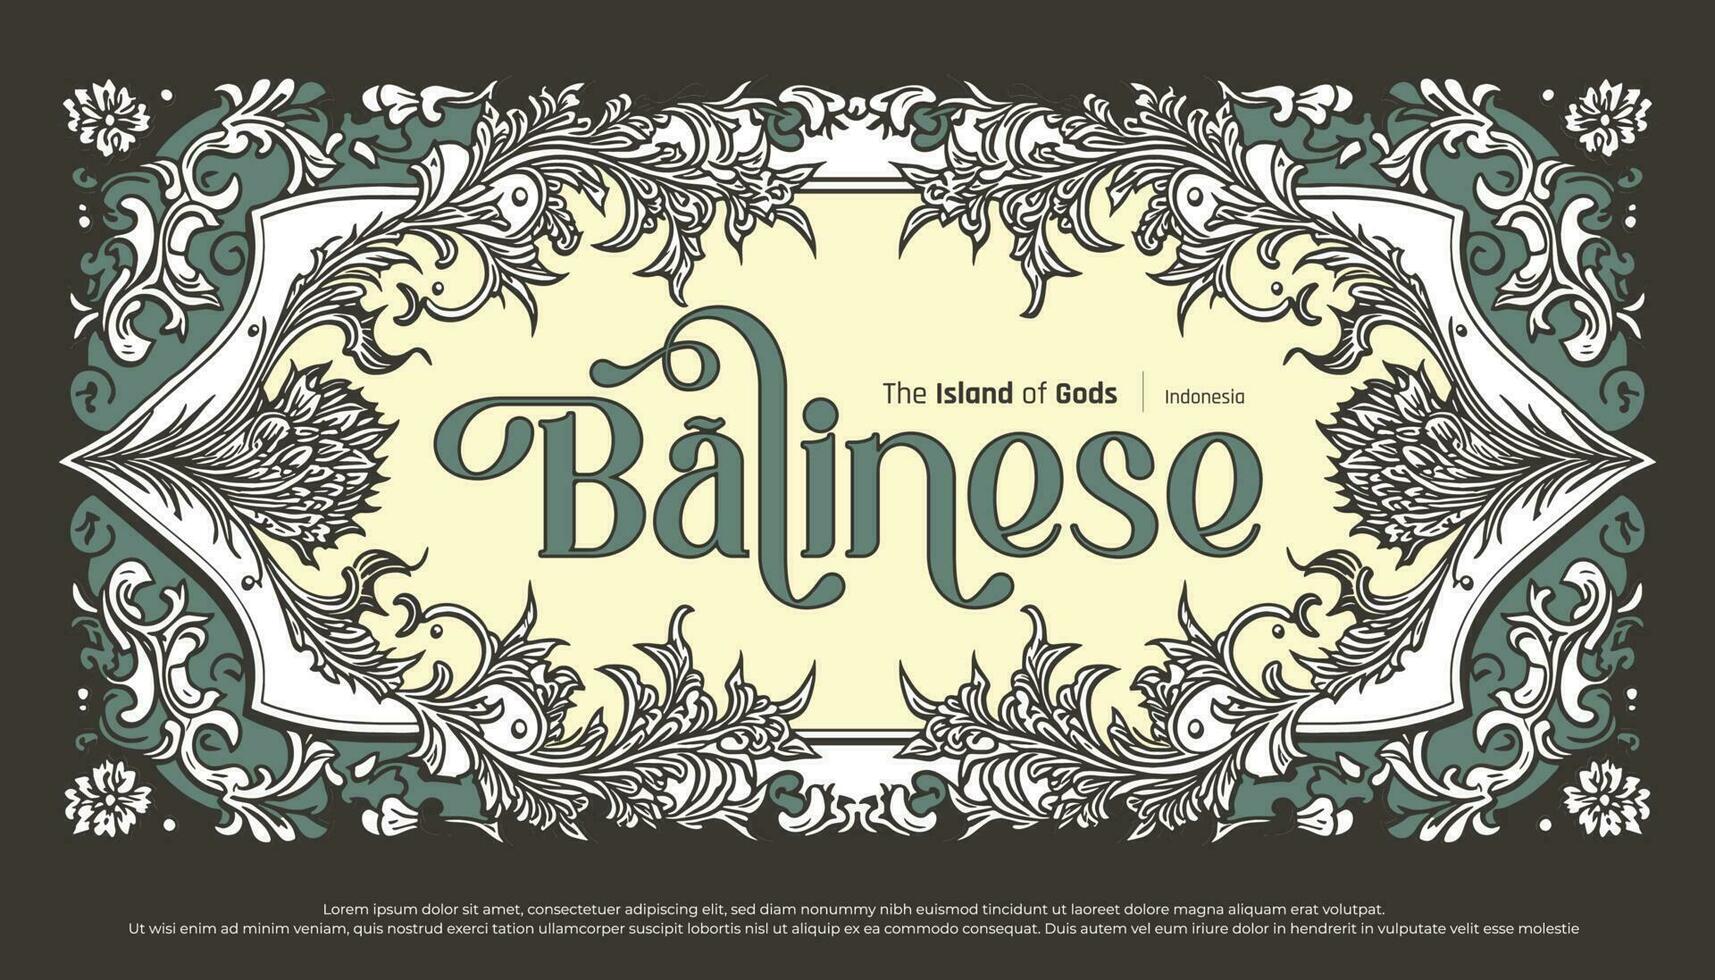 Luxus balinesisch Typografie mit Rand Dekoration Grün Blume Rahmen Illustration vektor